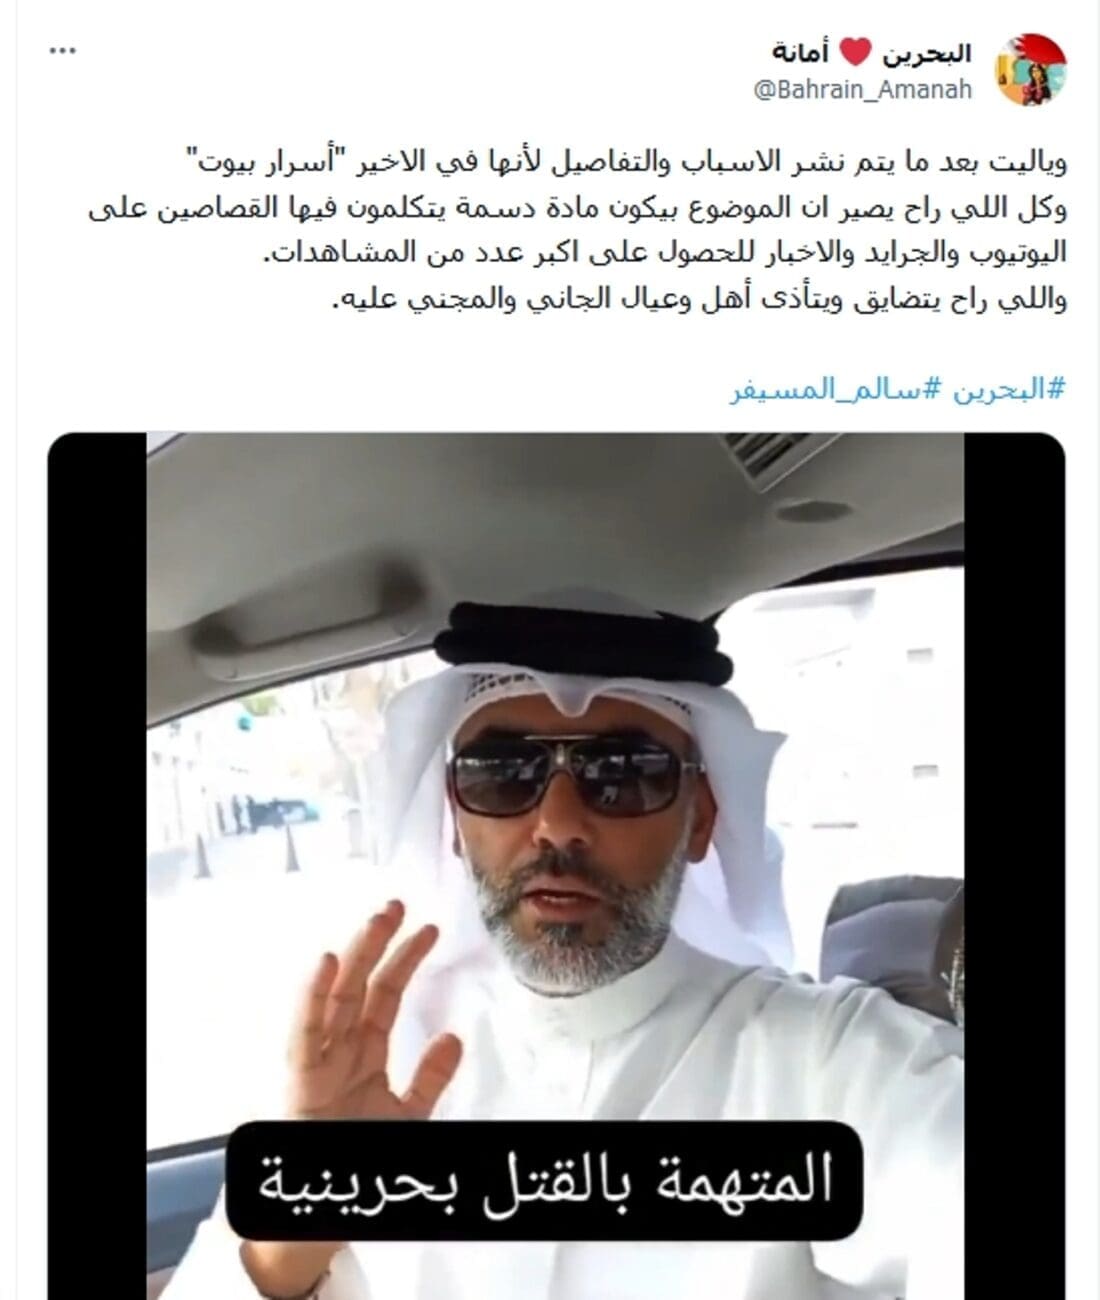 موعد جنازة سالم المسيفر بالمحرق بالبحرين اليوم